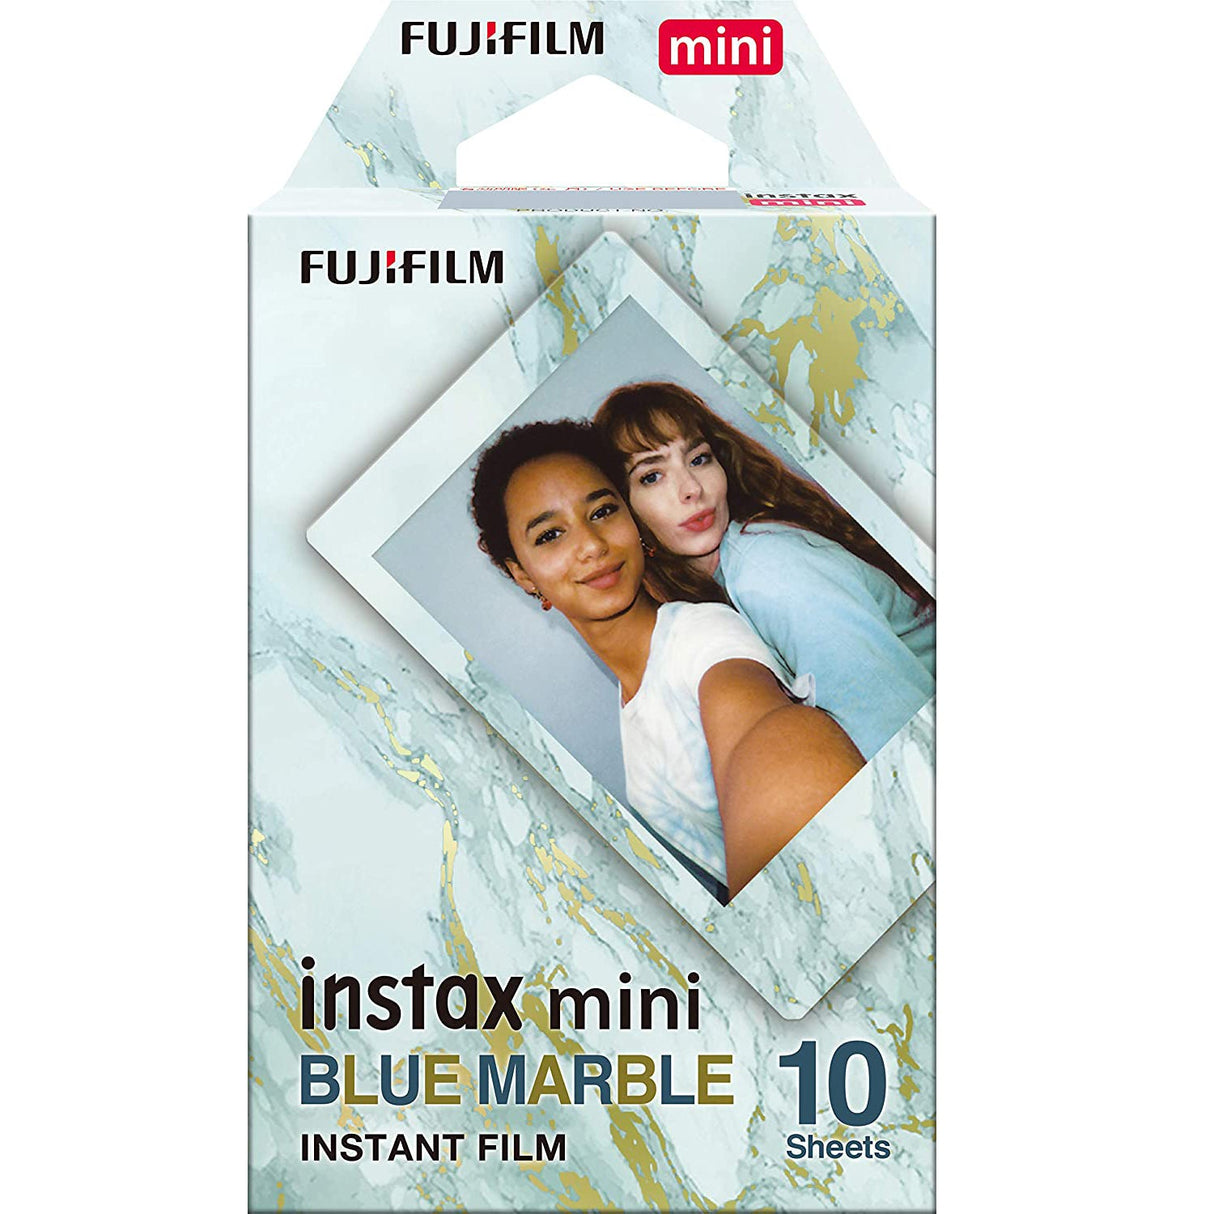 FUJIFILM Instax Mini 10x1 Instant Film Blue Marble